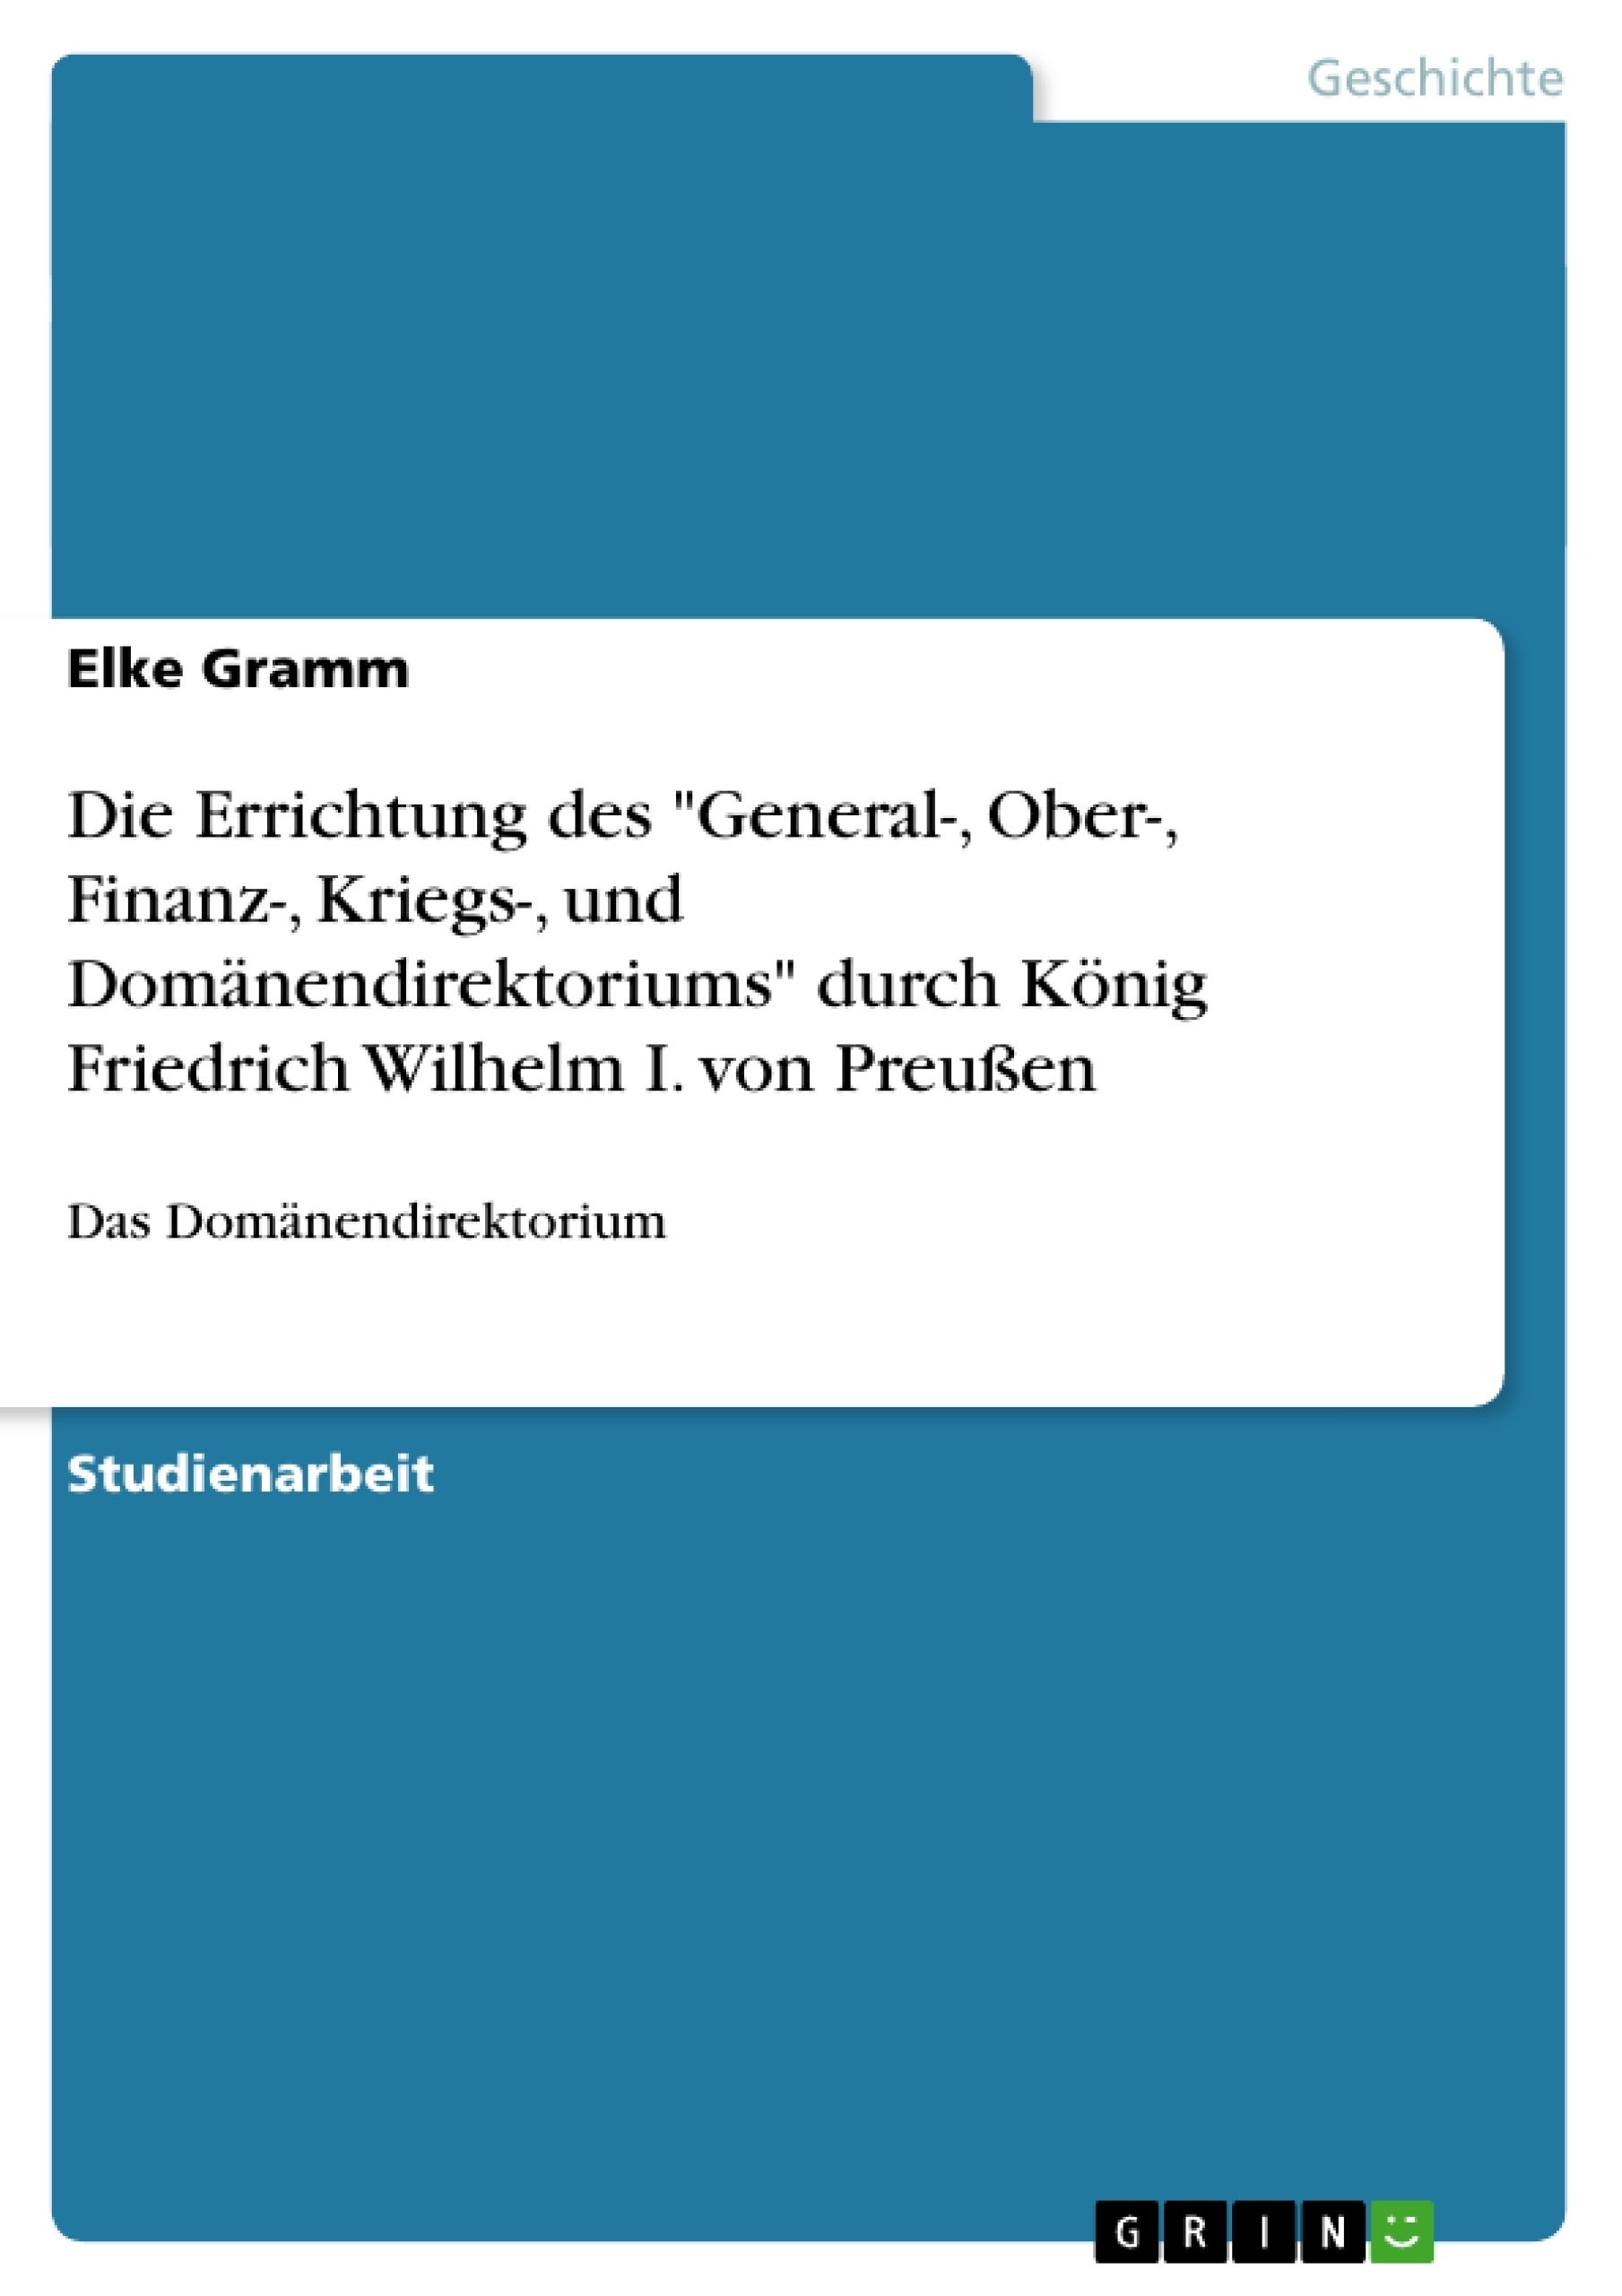 Title: Die Errichtung des "General-, Ober-, Finanz-, Kriegs-, und Domänendirektoriums" durch König Friedrich Wilhelm I. von Preußen